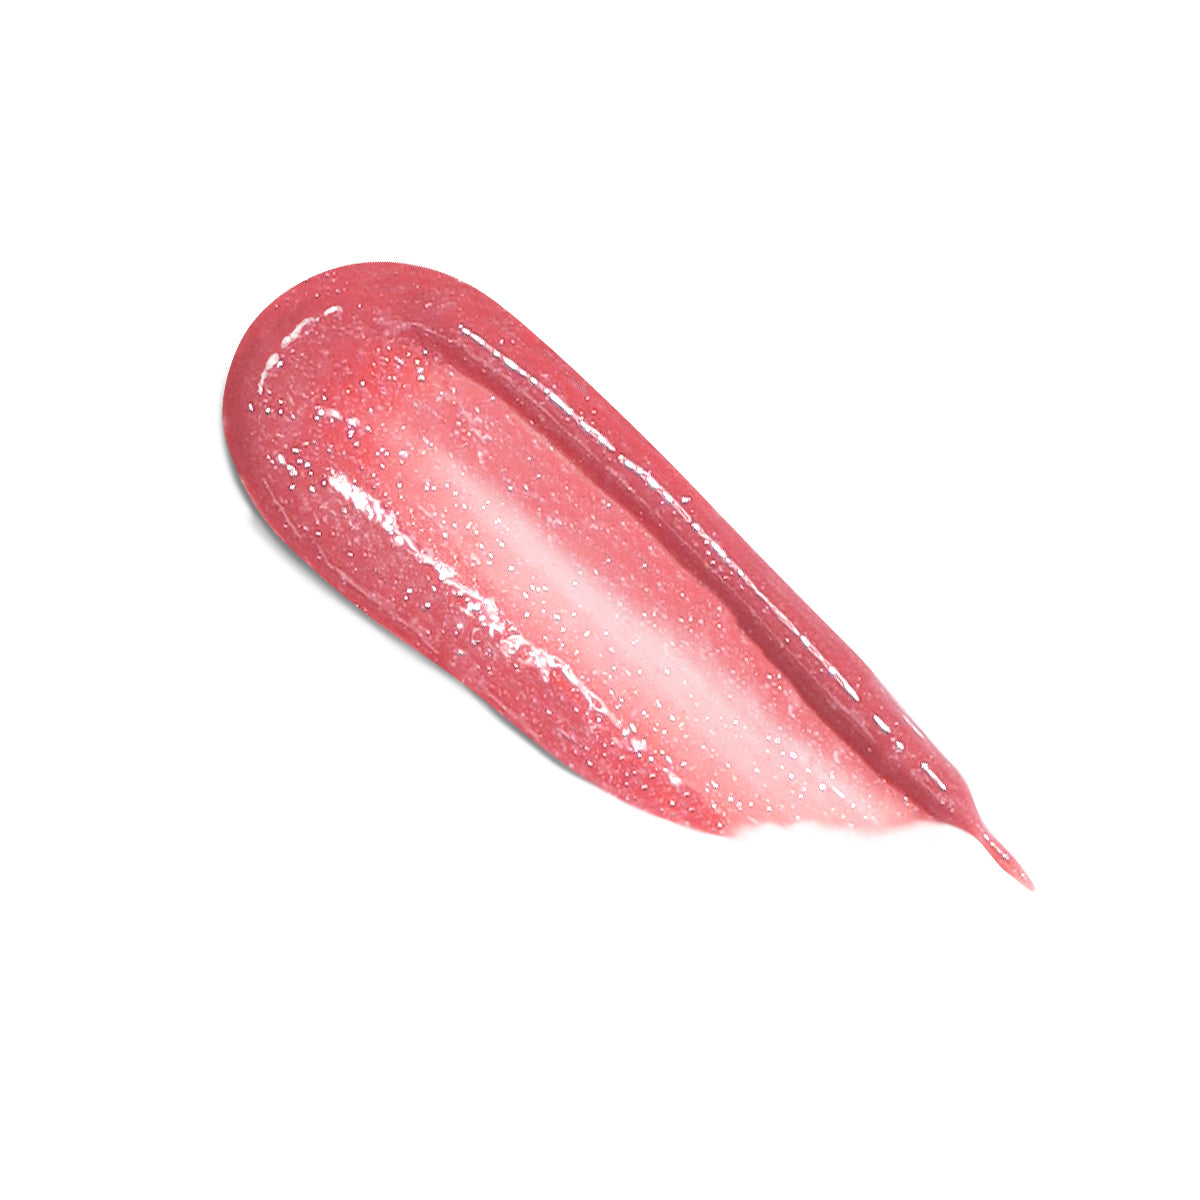 Plush Shine Lip Gloss - Dainty